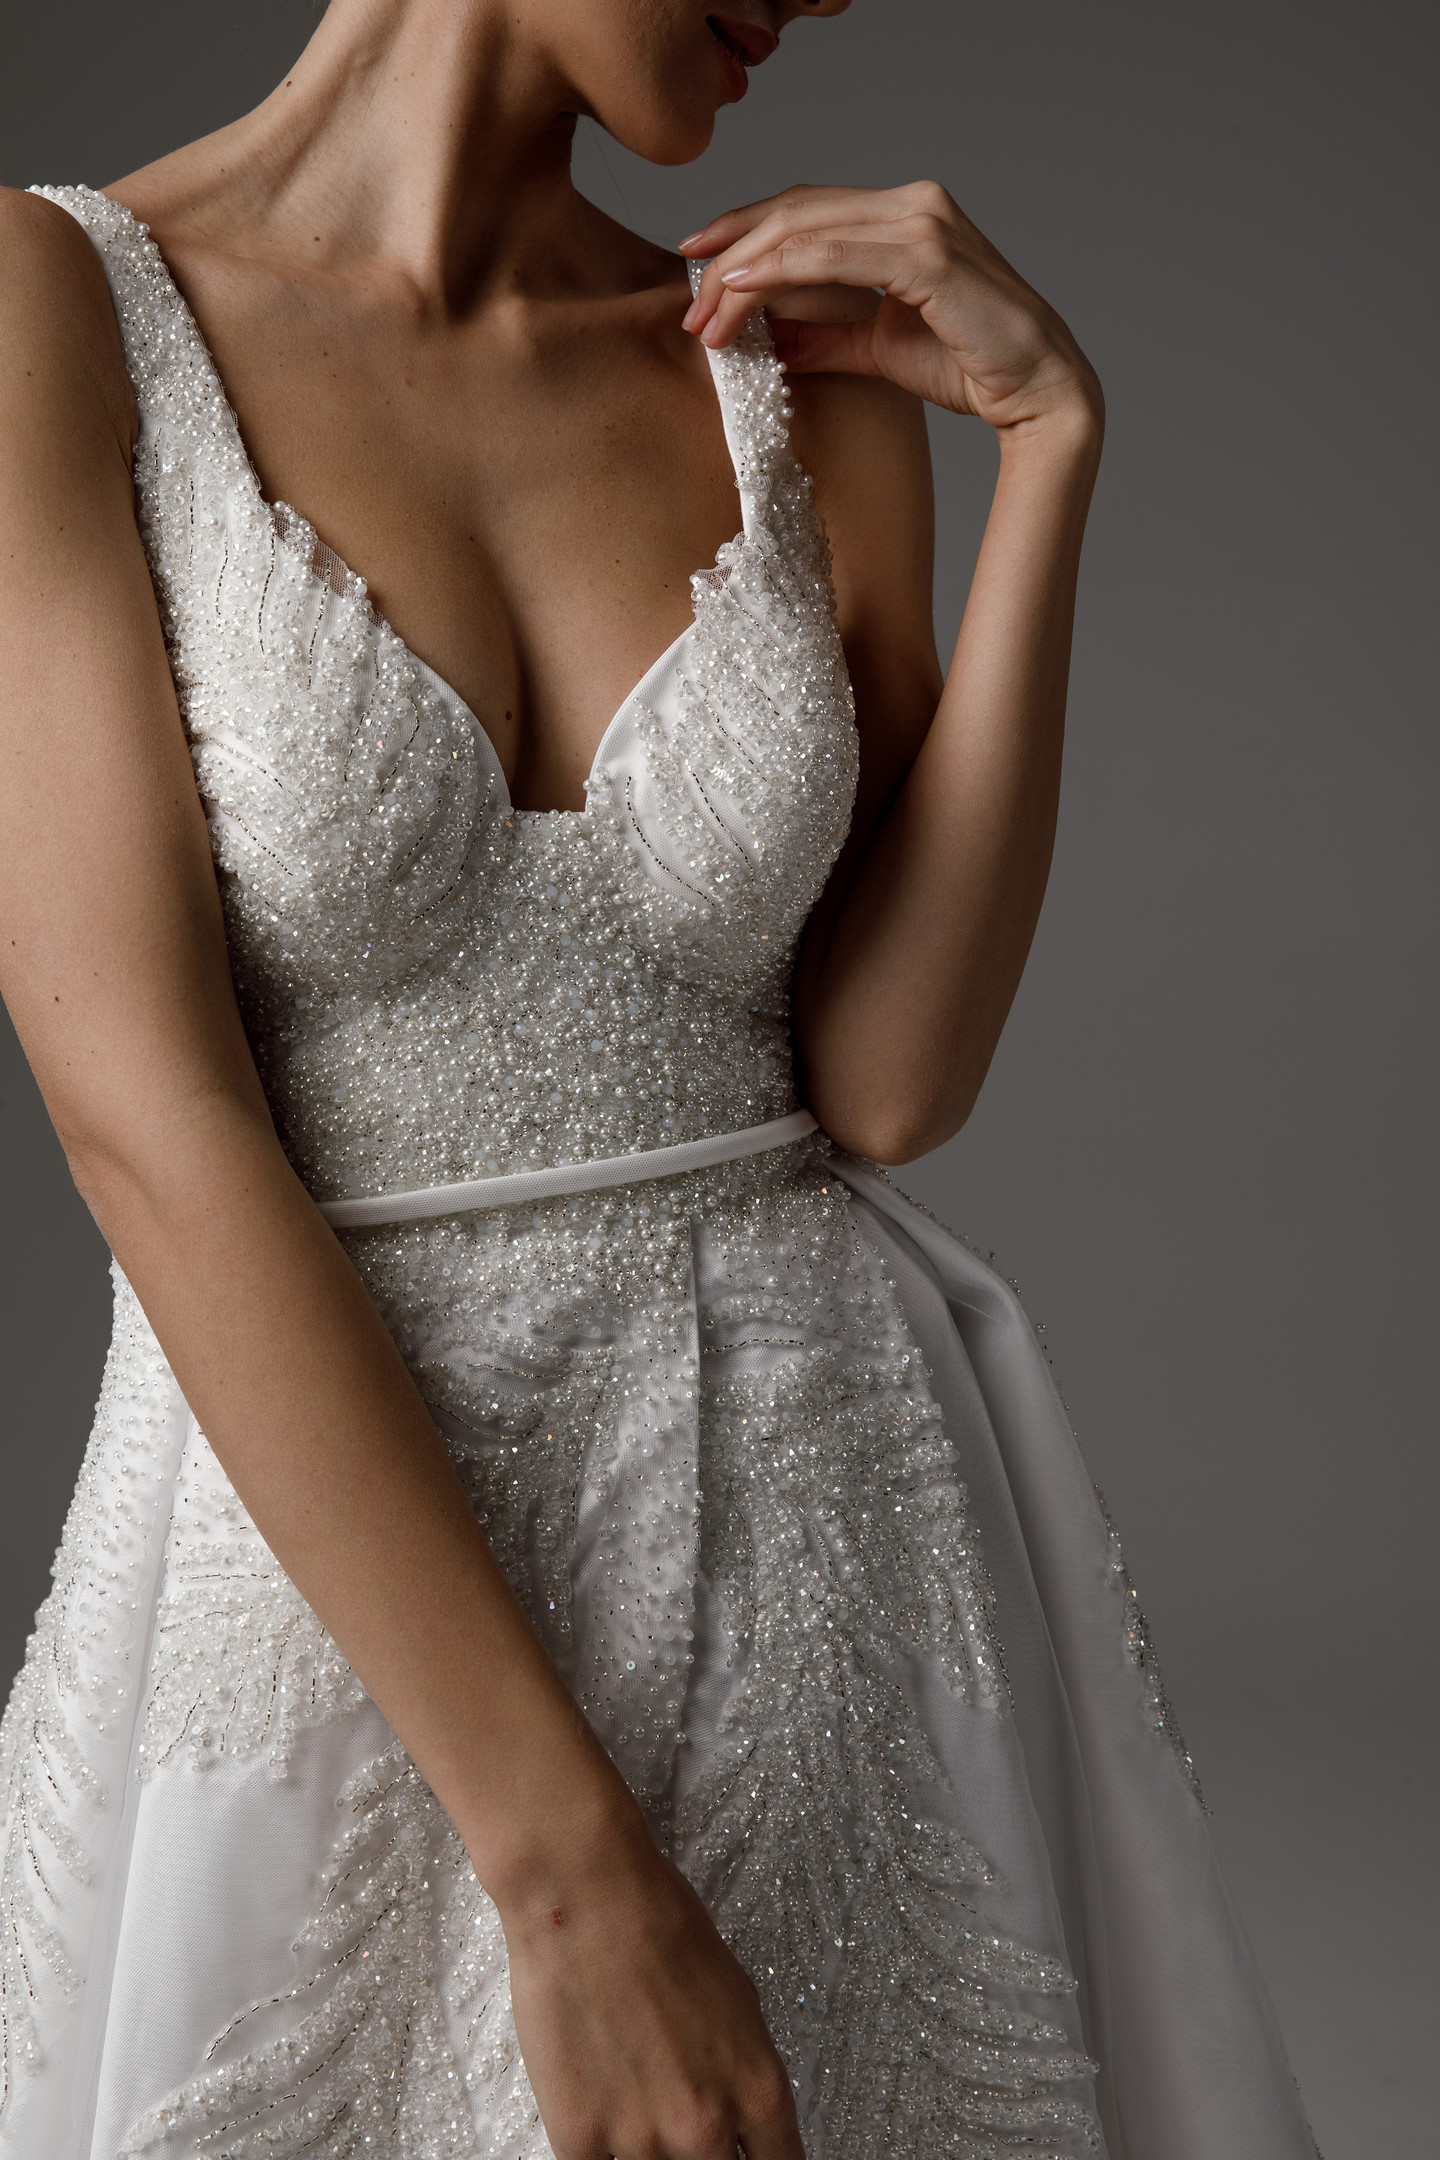 Платье Ингрид, 2021, одежда, платье, свадебное, молочно-белый, атлас, вышивка, А-силуэт, шлейф, архив